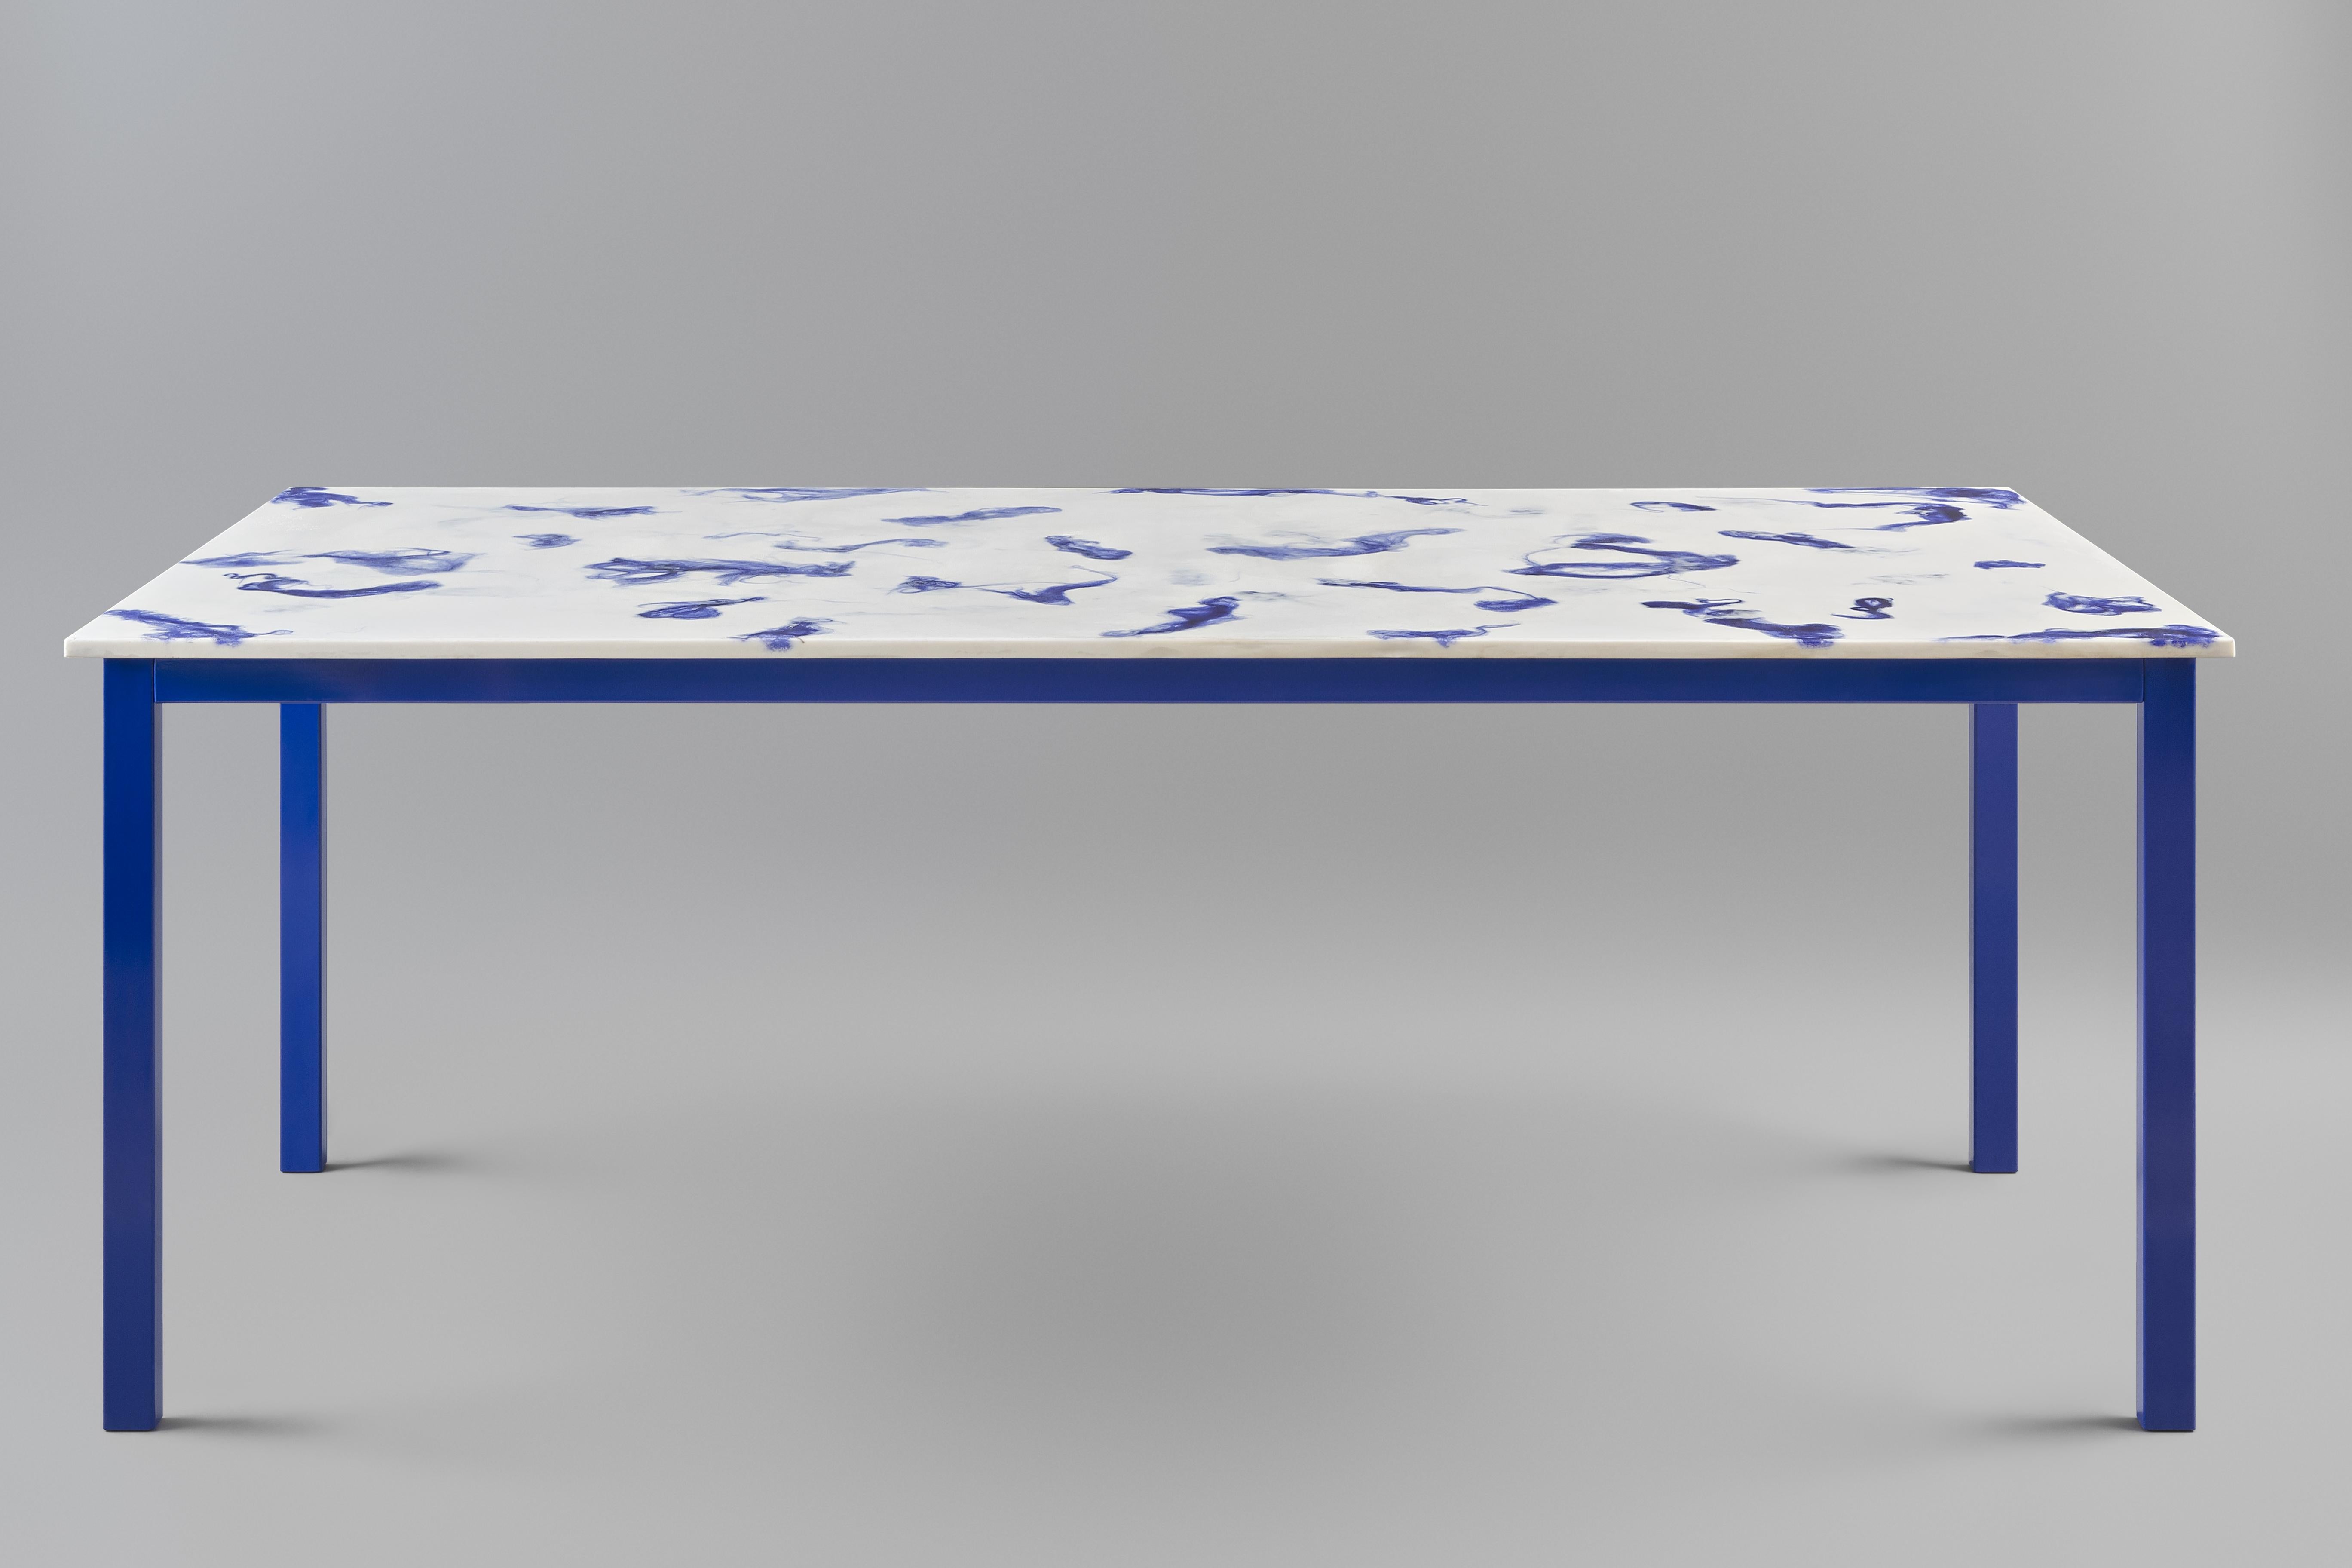 Fließender Esstisch.
Die Tischplatte ist aus Marwoolus-Material mit blauen Wollfasern und weißem Carrara-Marmor-Pulversockel gefertigt.
Die Stahlrahmenkonstruktion ist blau pulverbeschichtet.

Informationen zum Material:
Marwoolus ist ein